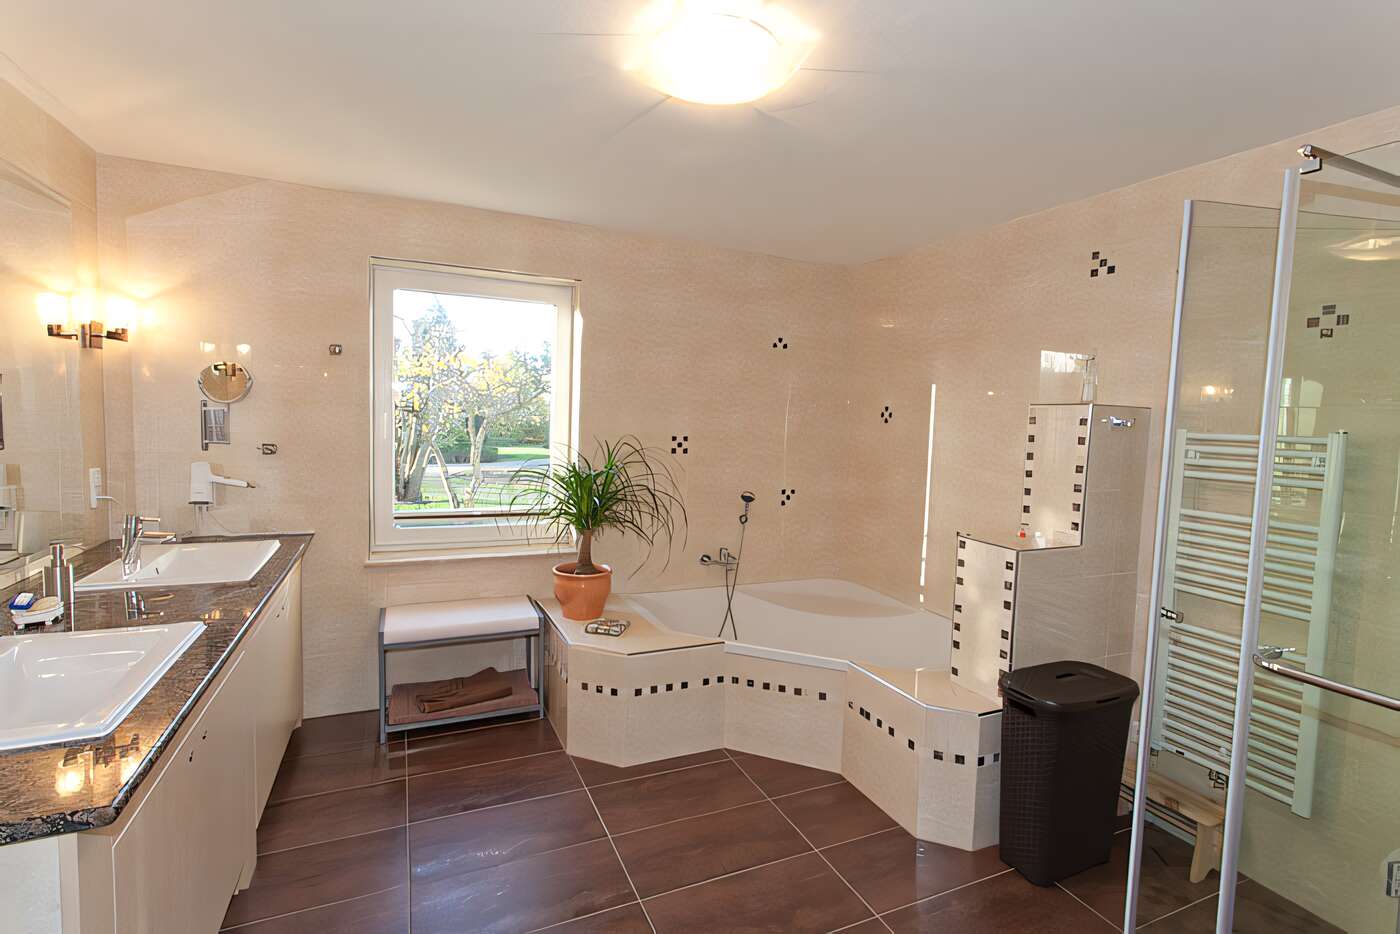 Das groe Bad des Ferienhauses mit Dusche, Eckbadewanne, Waschmaschine und Wschetrockner im Erdgeschoss